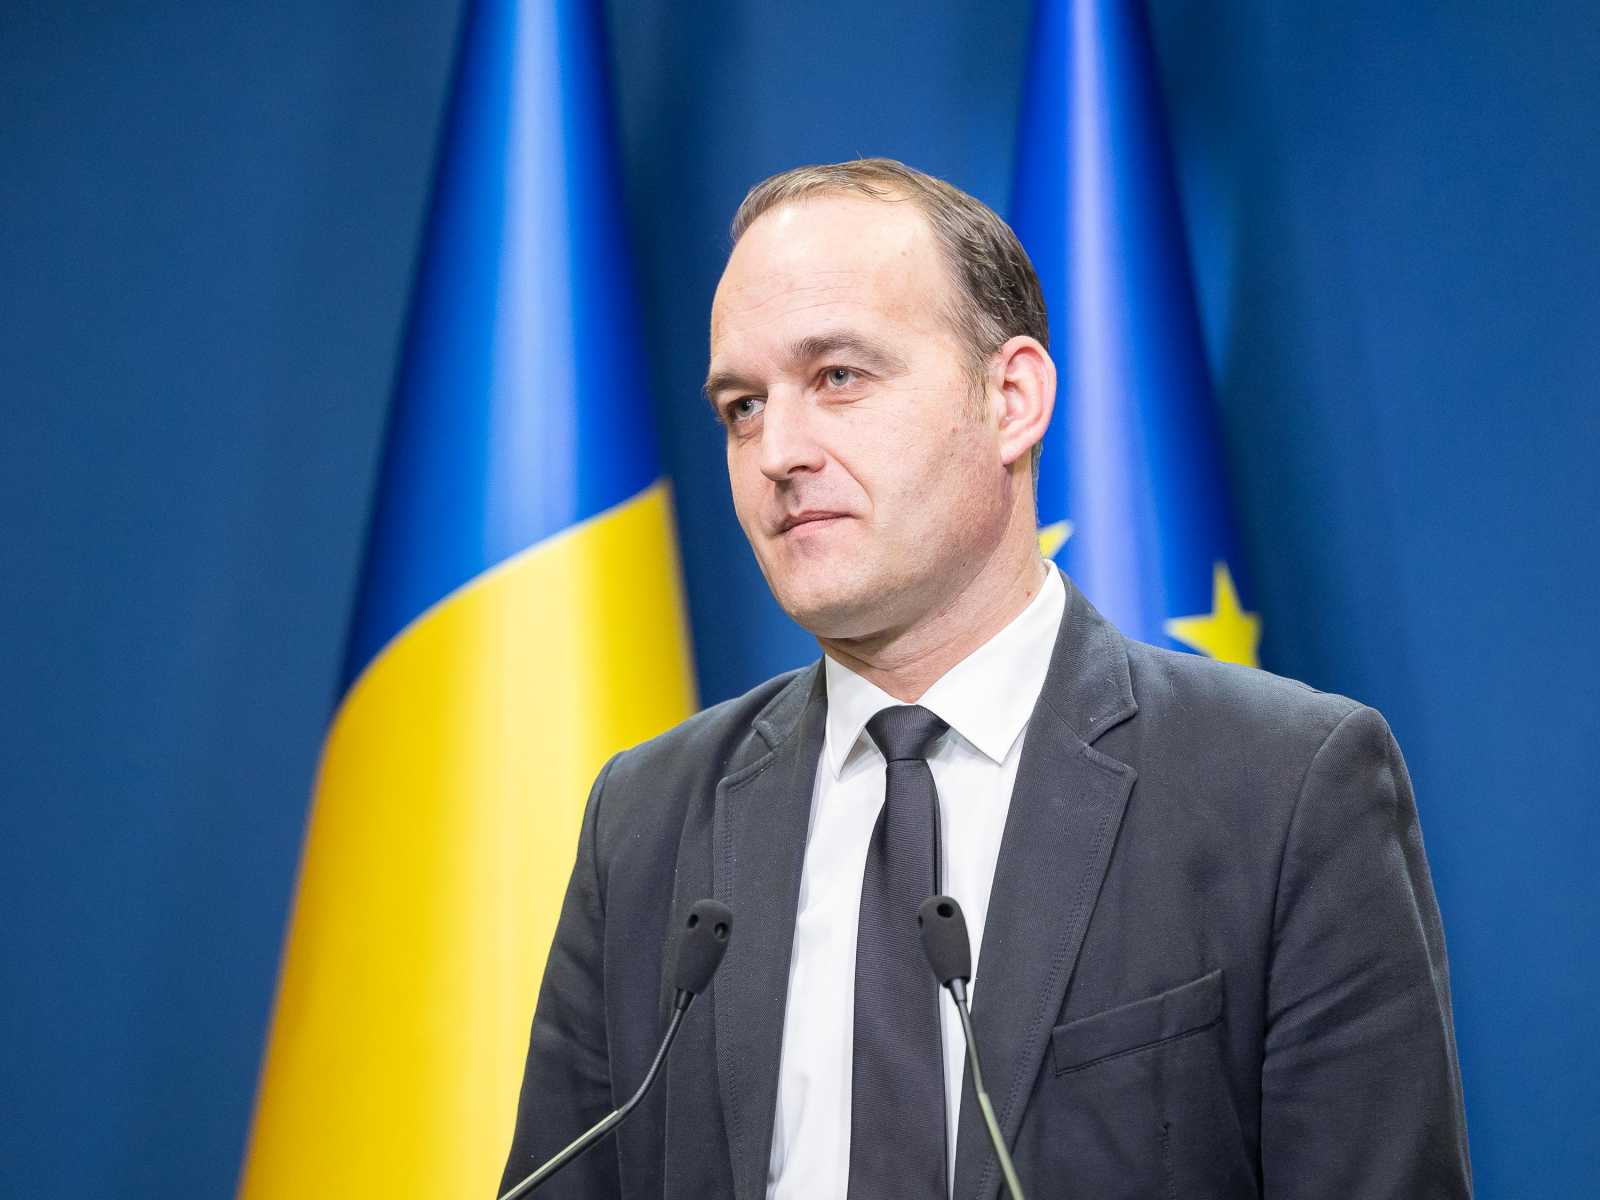 Dan Vîlceanu európai beruházásokért és projektekért felelős miniszter | Fotó: gov.ro